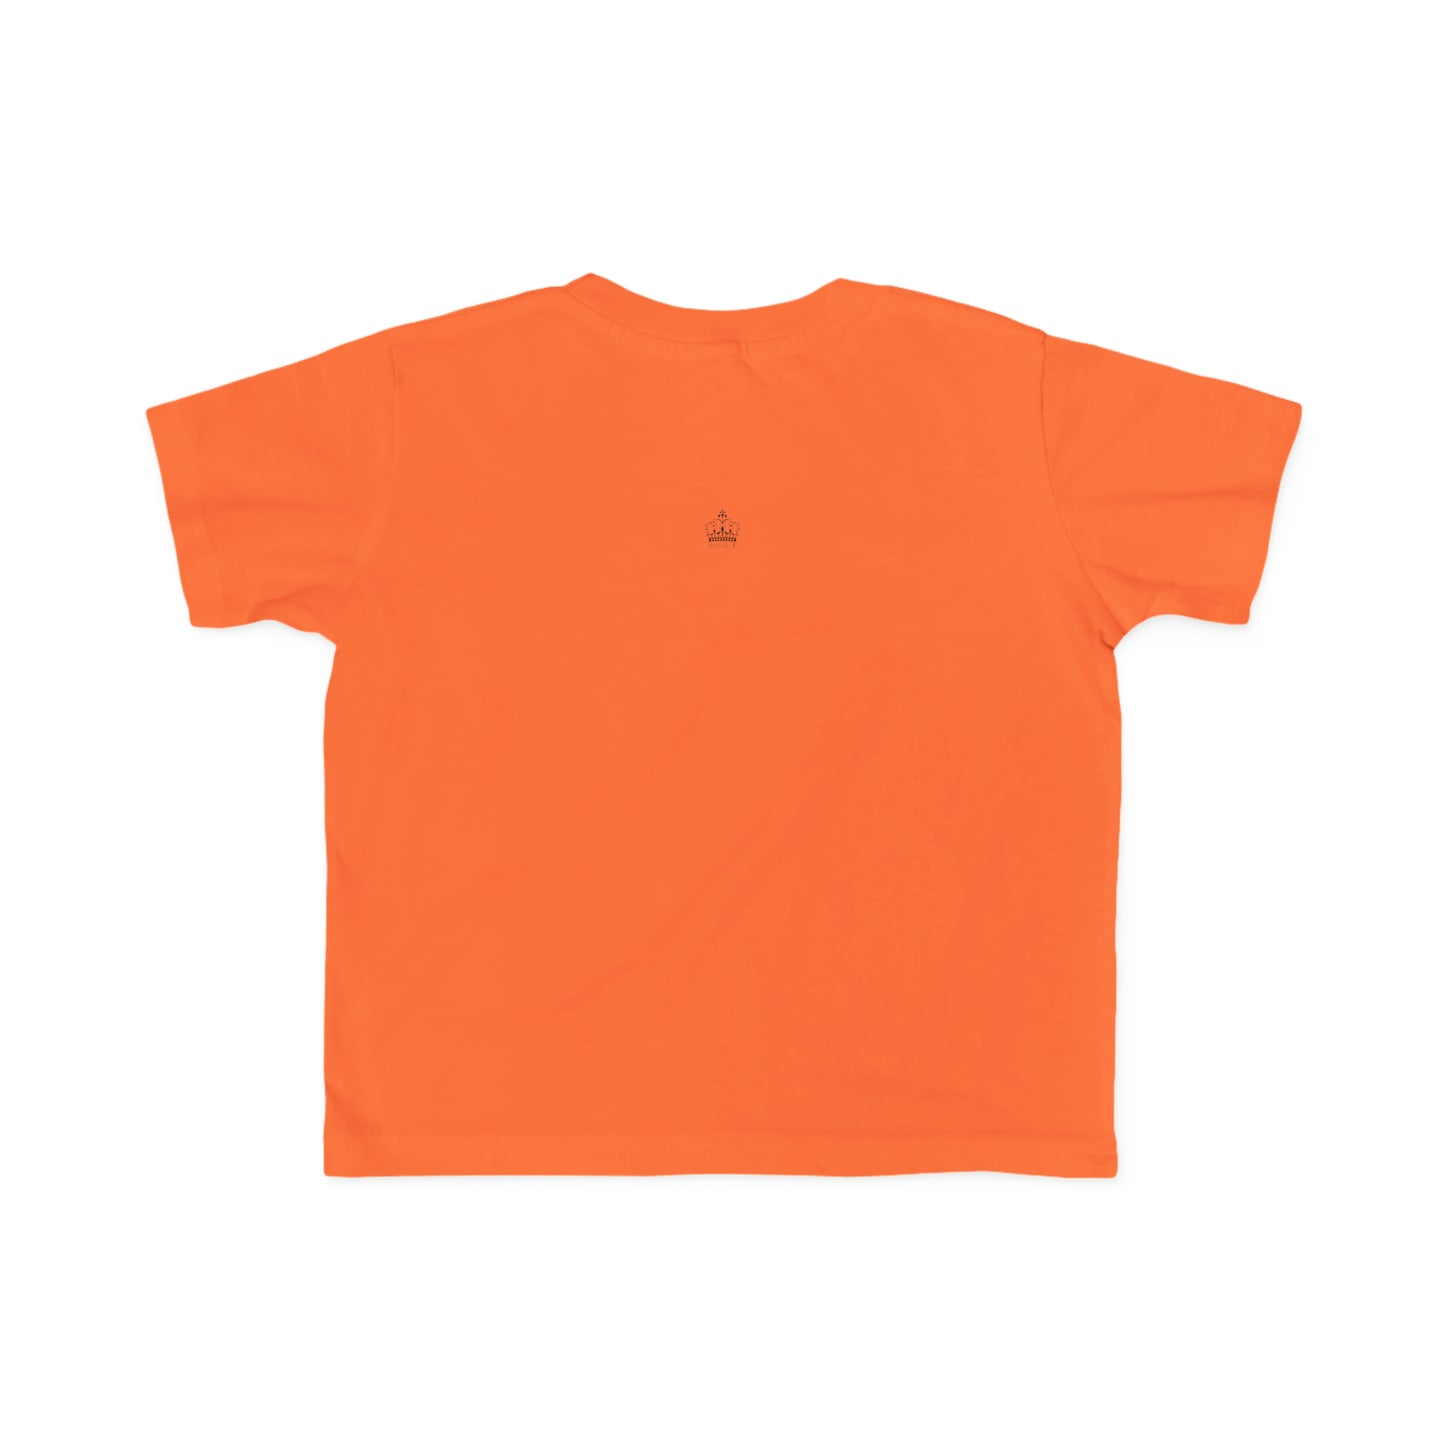 Orange - Toddler's Fine Jersey Tee - Orange Royal T